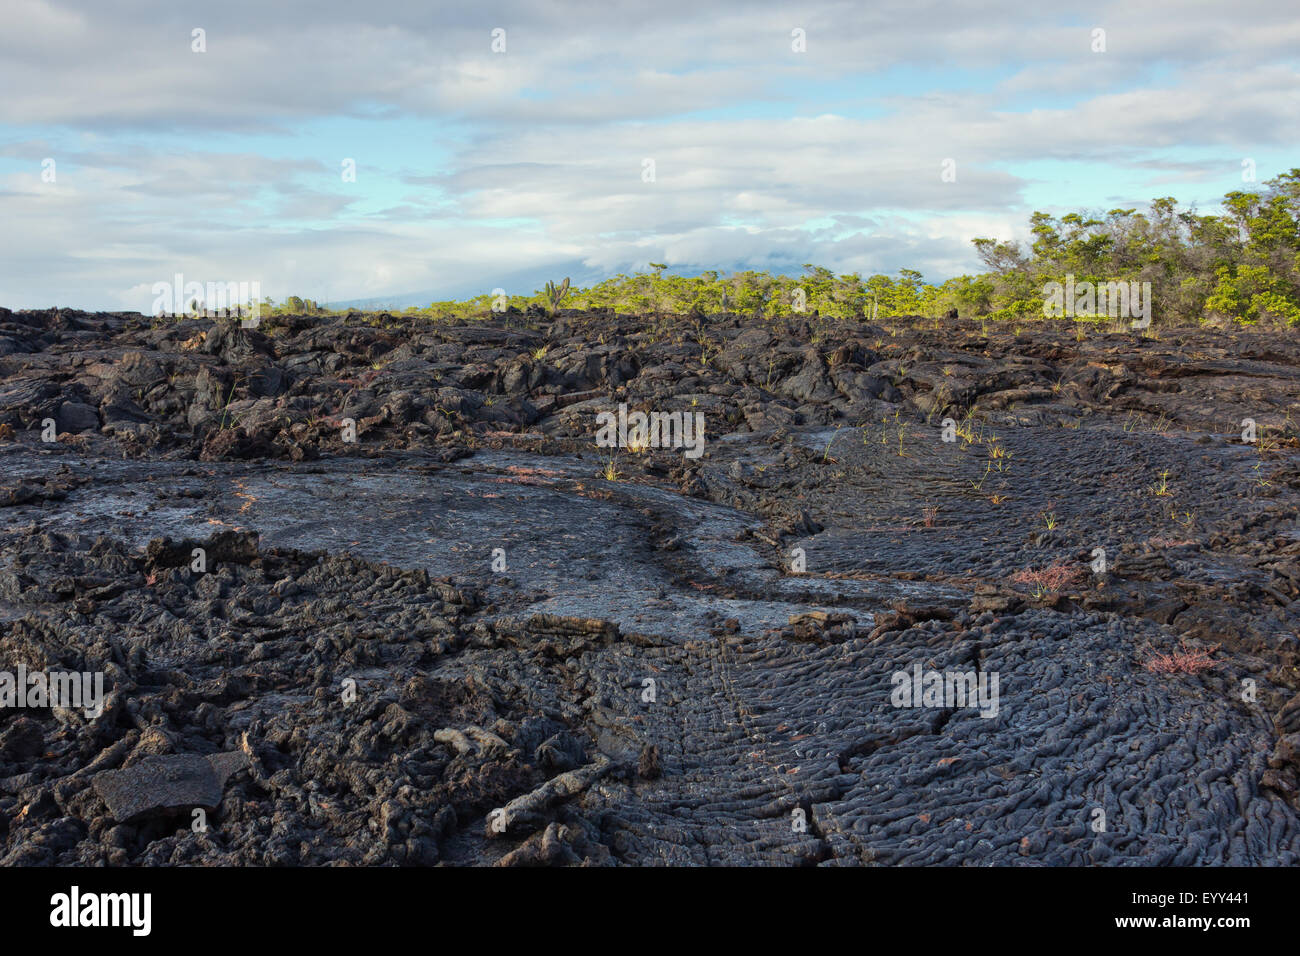 Ropy pahoehoe lava flow on Isabela Stock Photo